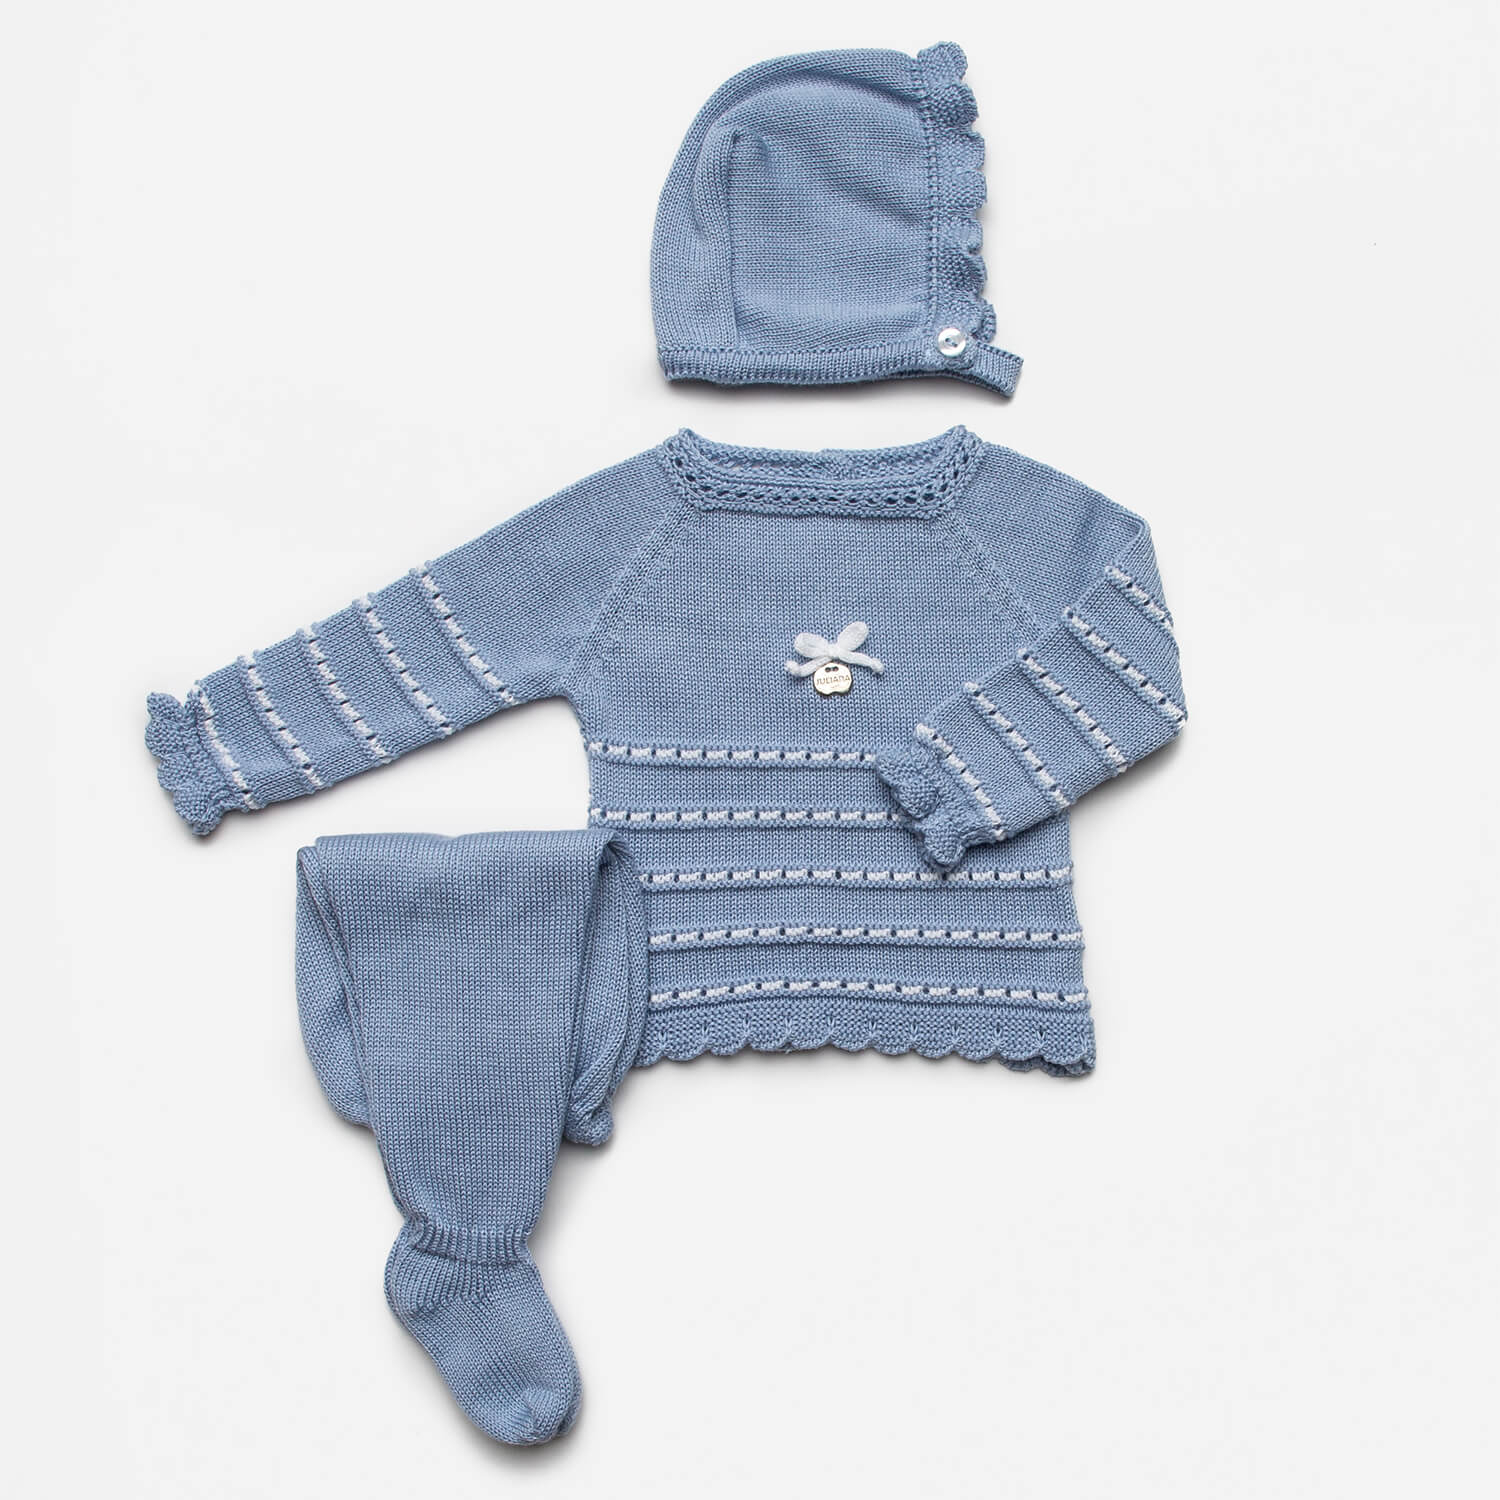 Baby 3-teiliger Anzug blau mit weißen Details